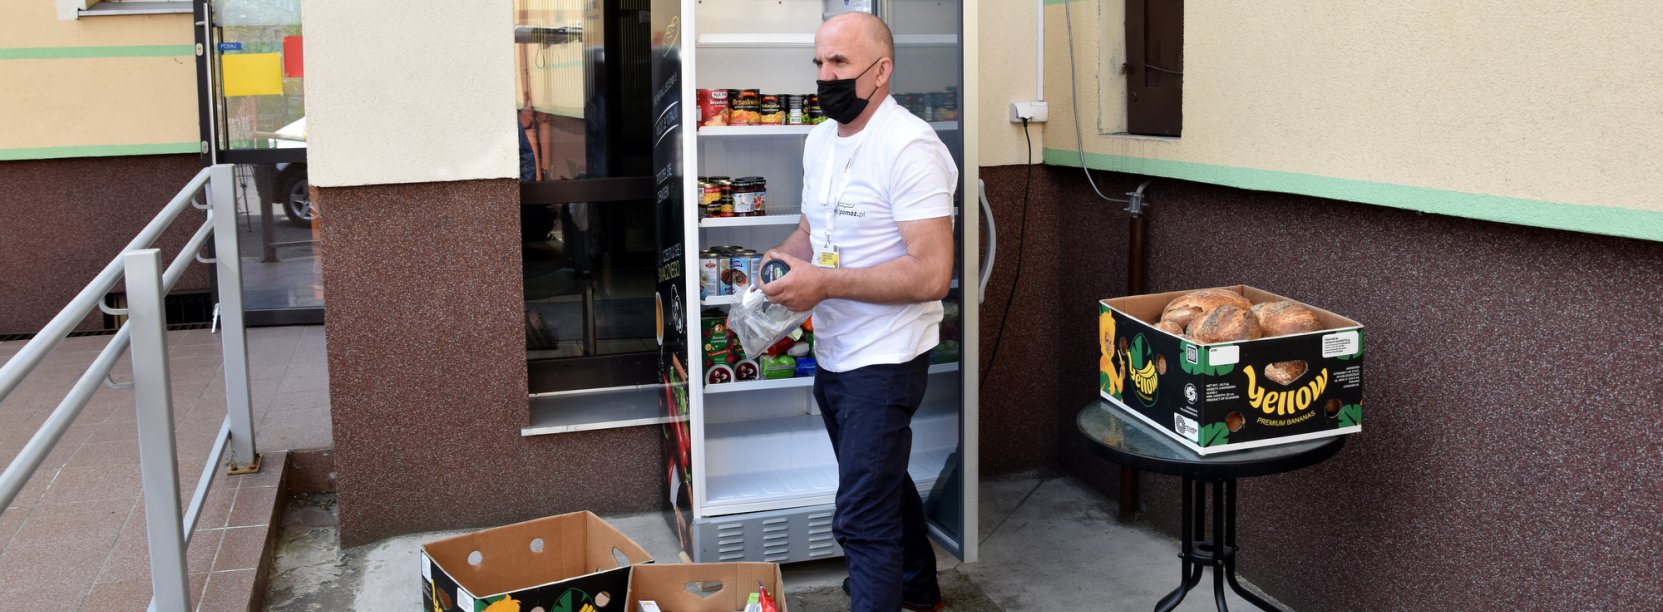 Mężczyzna wkładający jedzenie do lodówku przy wejściu do budynku OPS-u